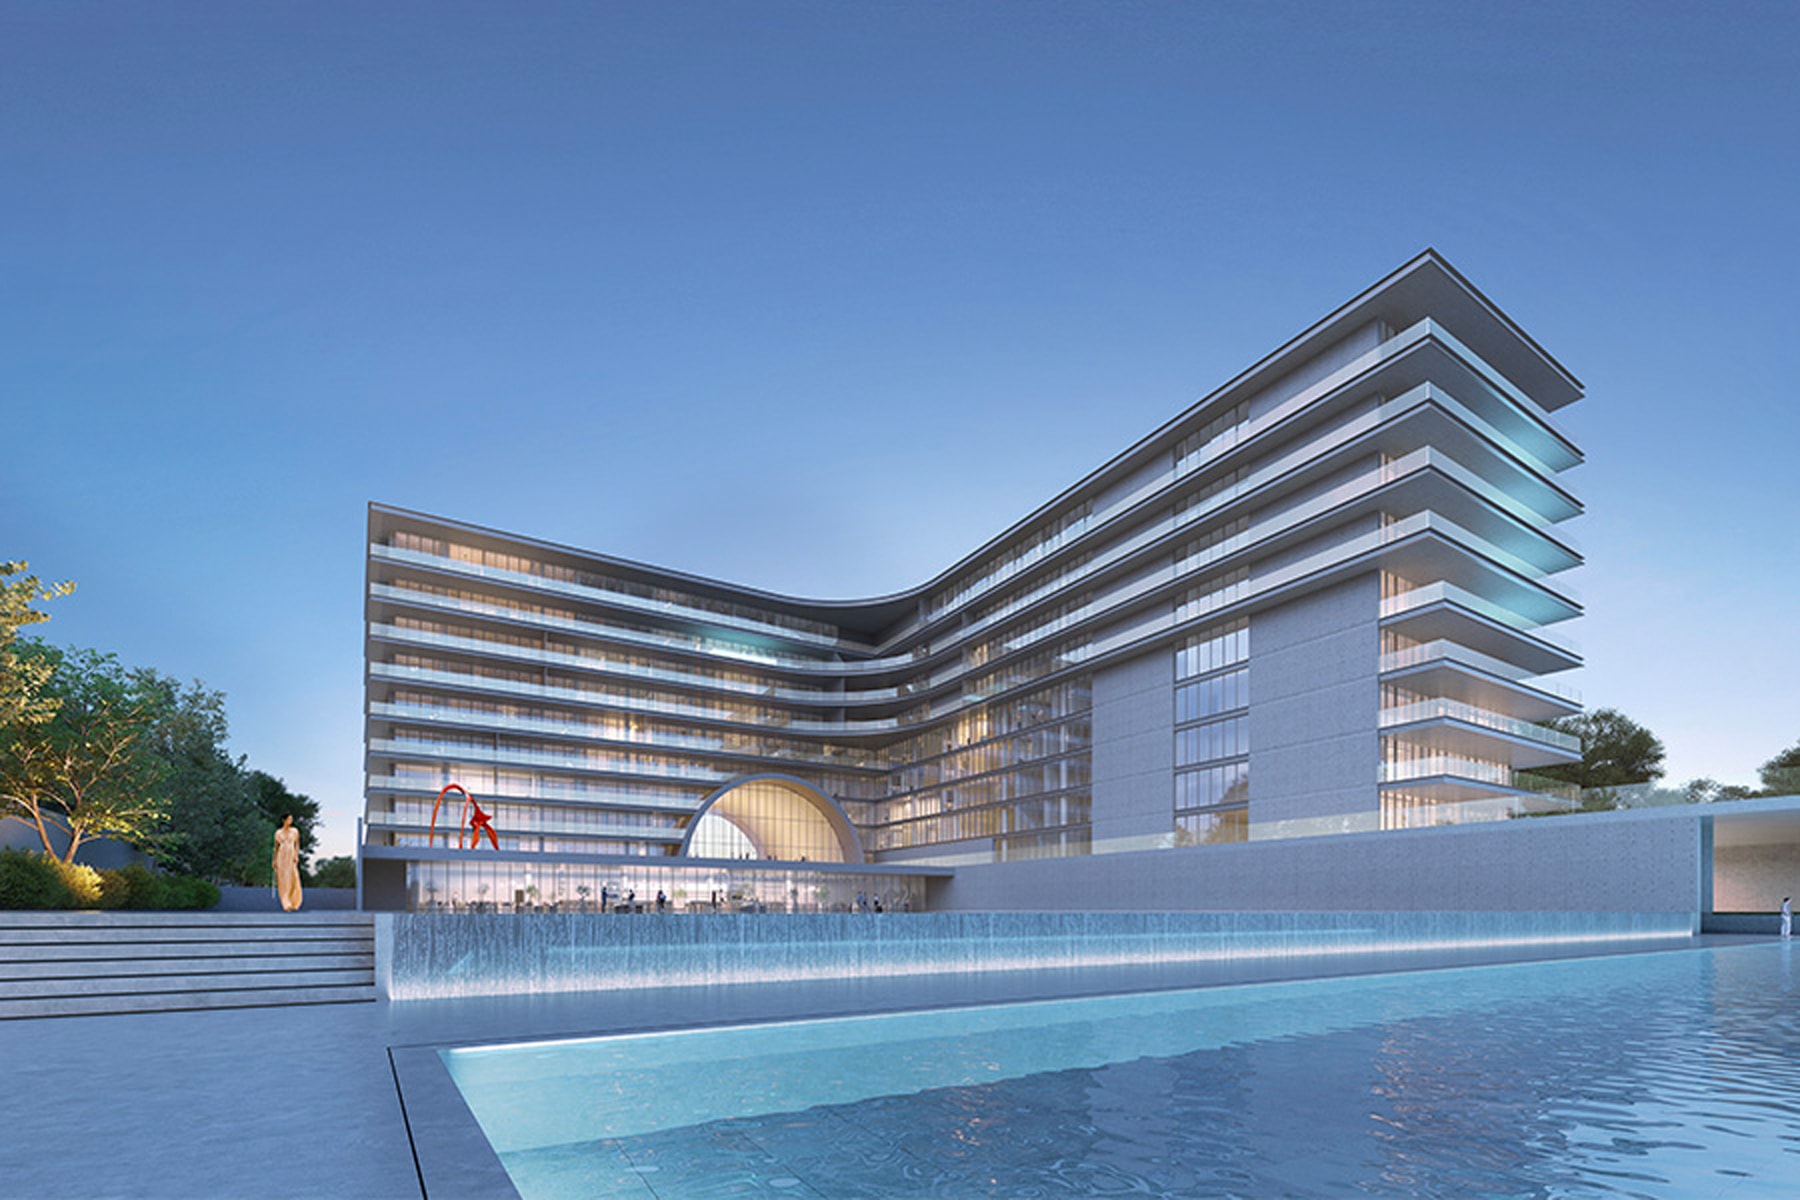 傳奇建築師安藤忠雄設計之杜拜海灘住宅 Armani Beach Residences 正式登場